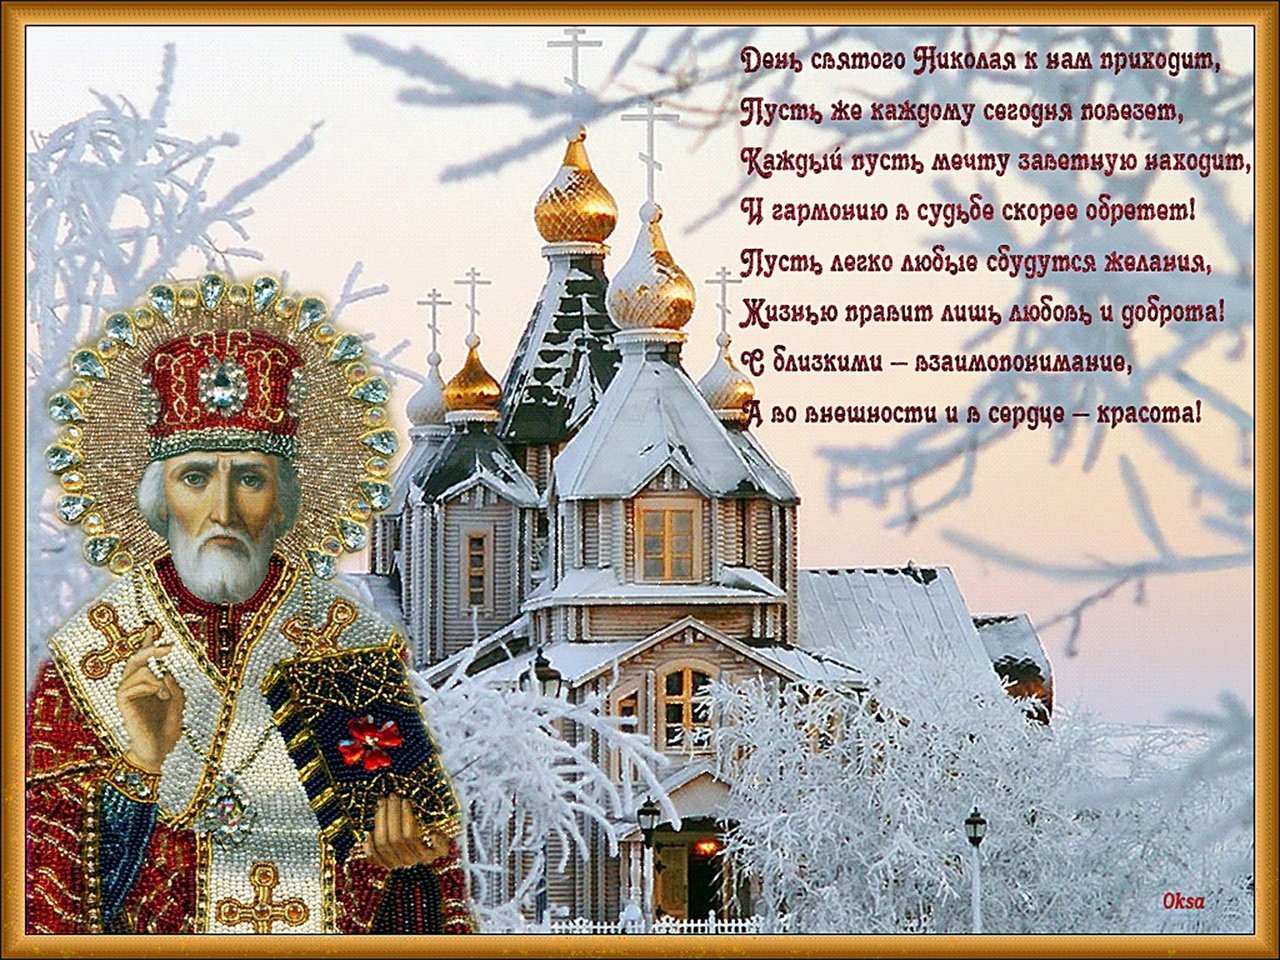 19 декабря 2014 1598. С праздником Николая Чудотворца 19 декабря. С Николой чудотворцем зимним.